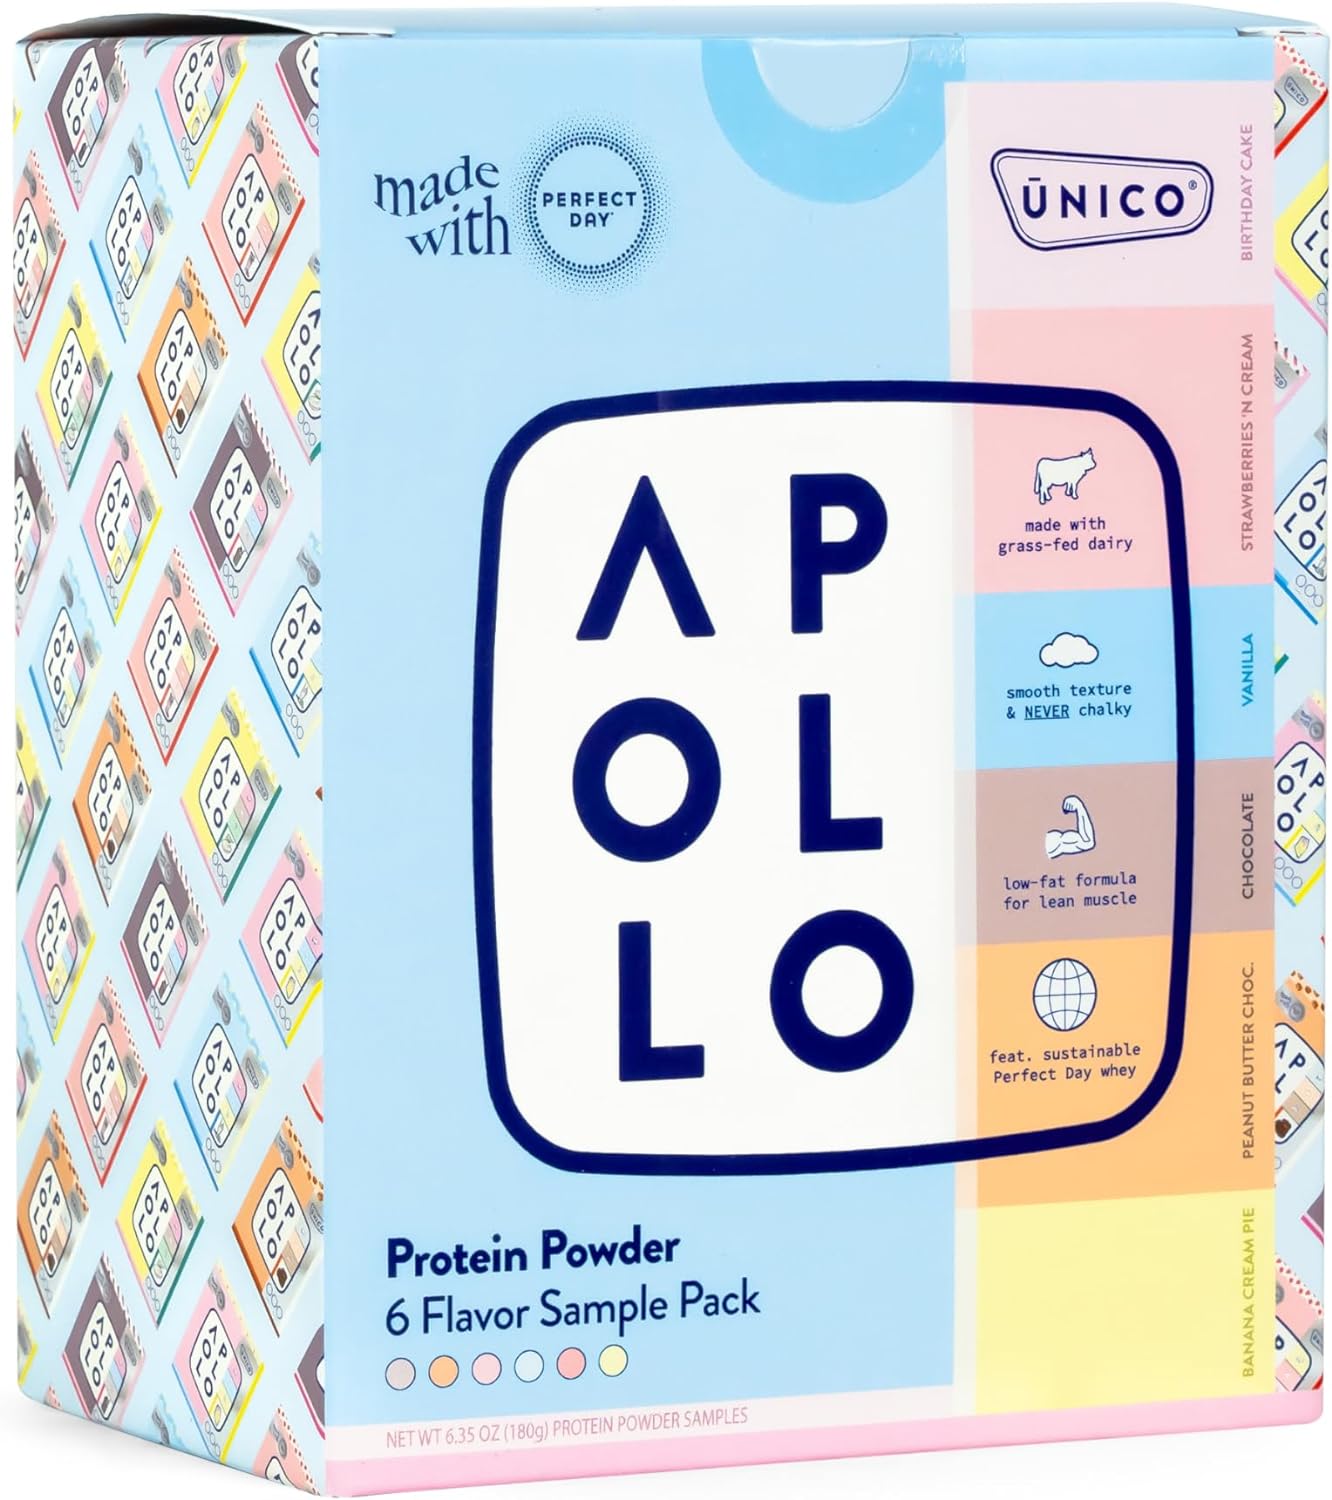 Unico-Apollo-Protein-Powder-Samples-Variety-319